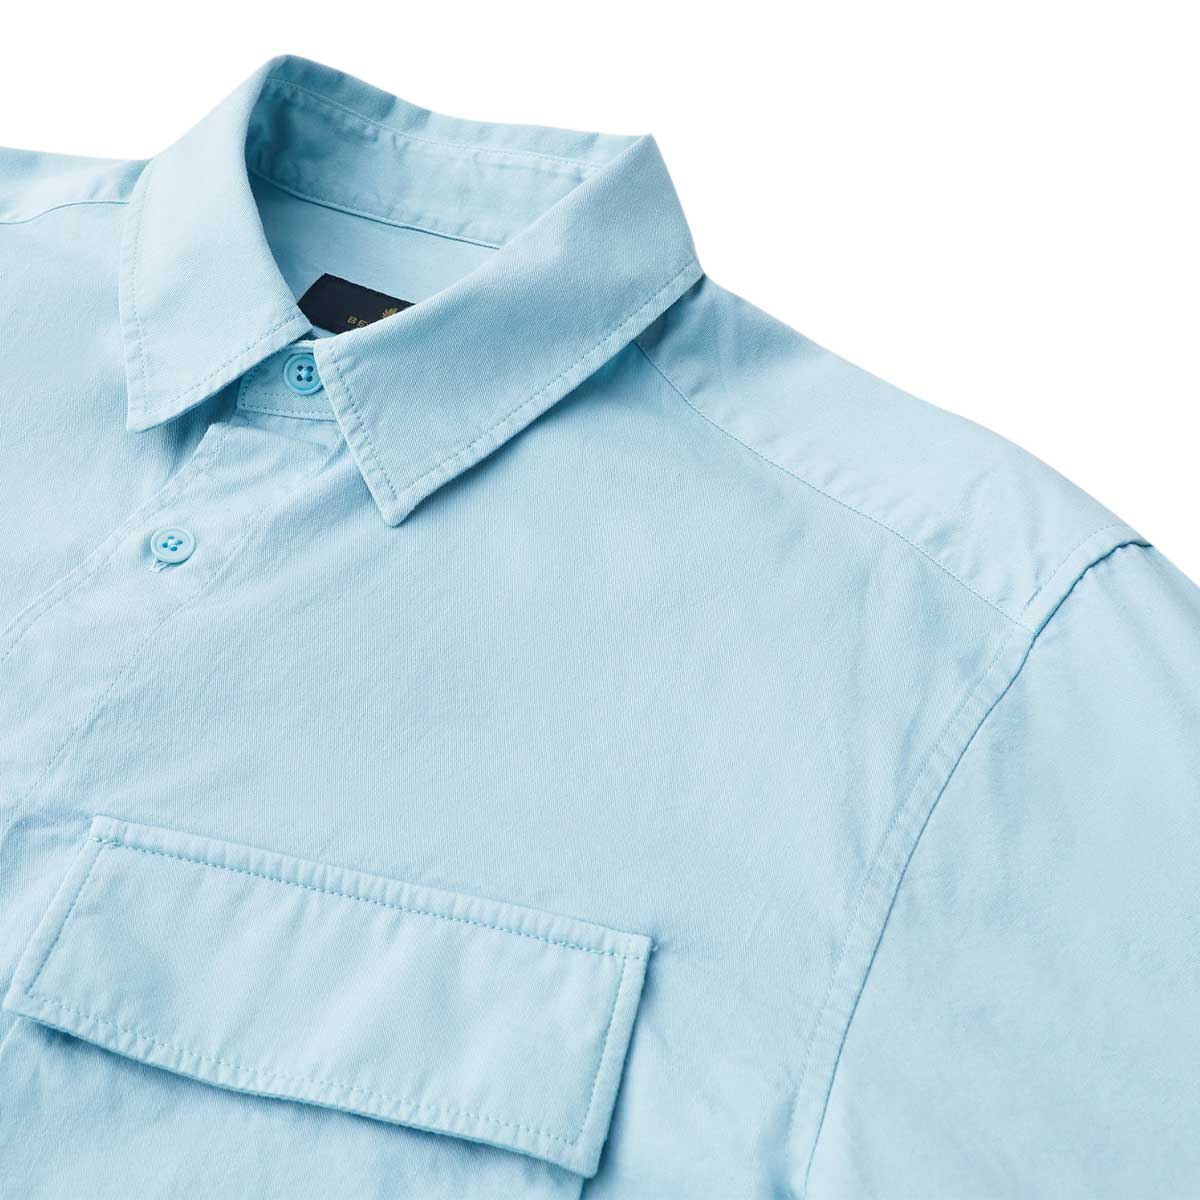 Scale Skyline Blue Long Sleeve Shirt  Belstaff   